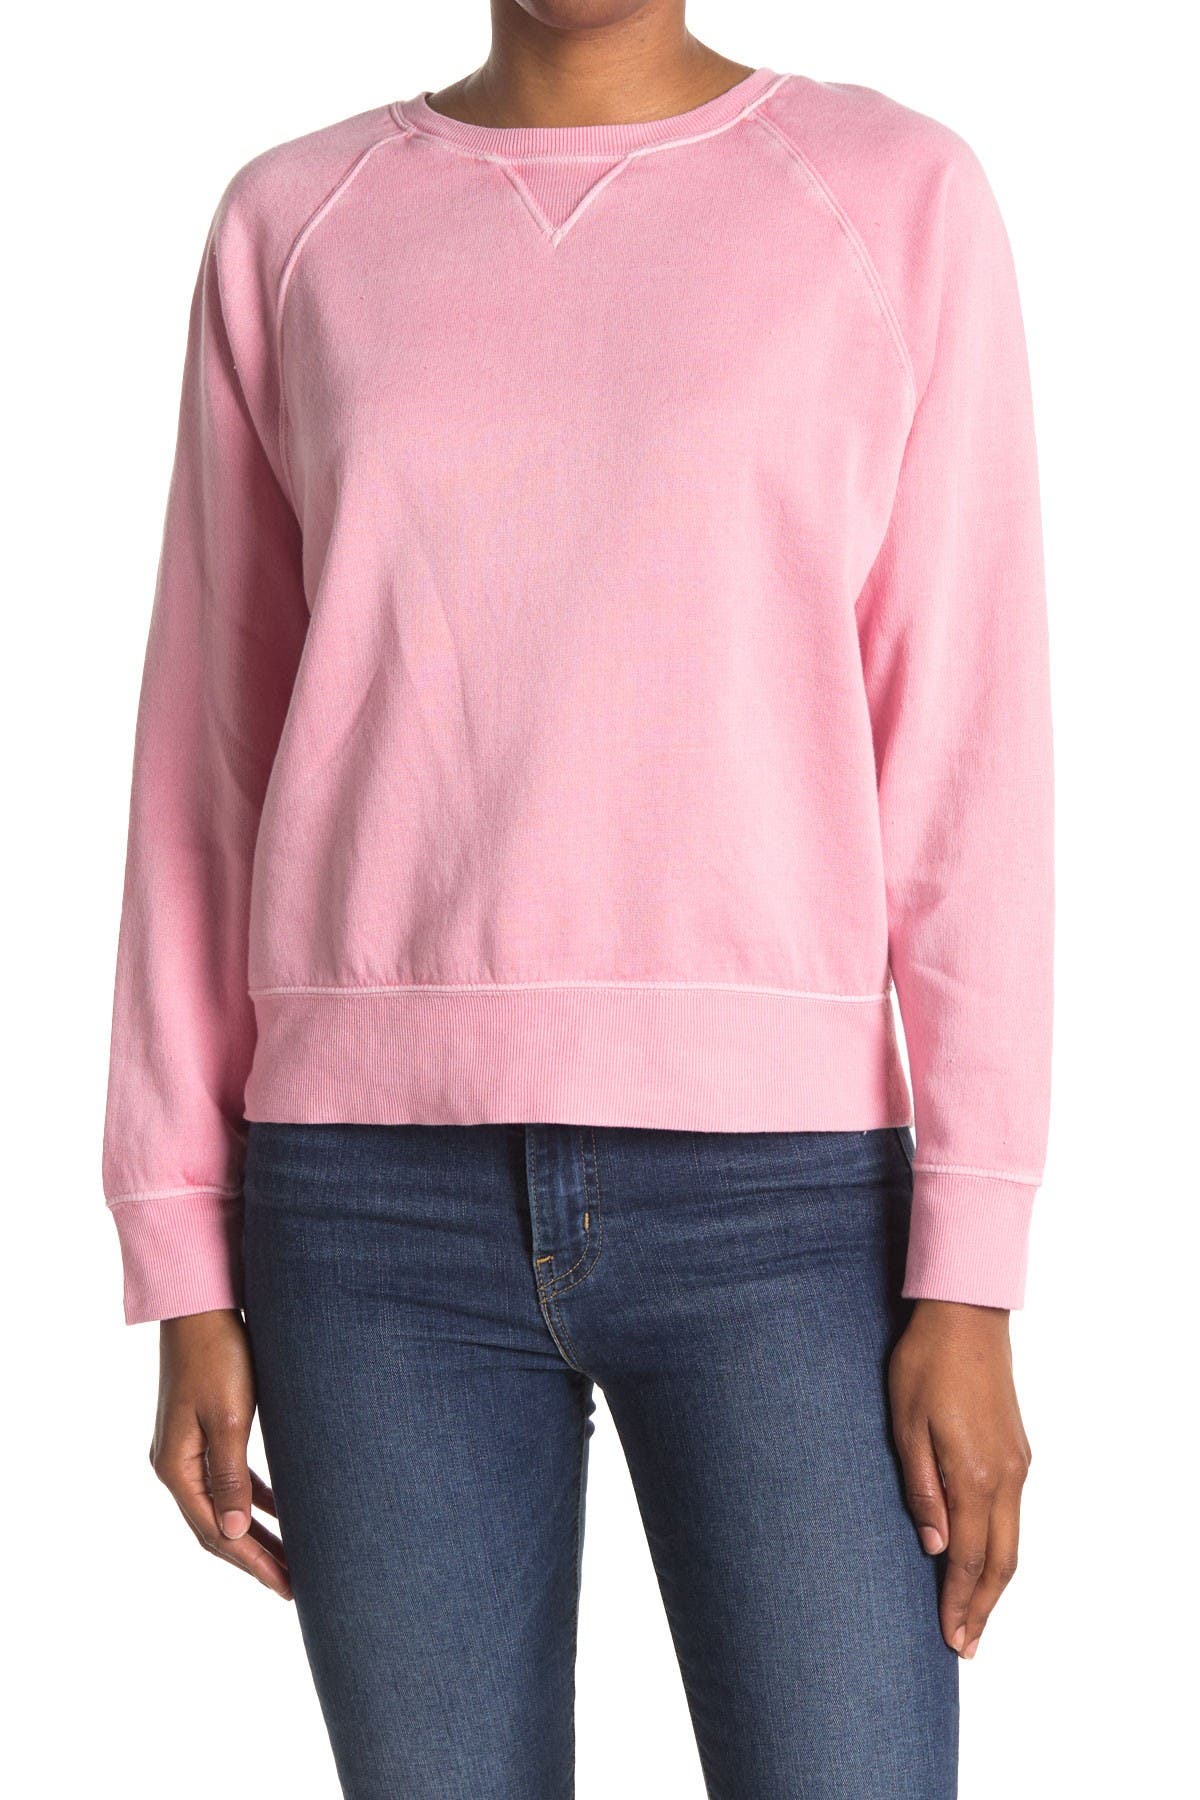 Abound Raglan Sleeve Pullover In Light/pastel Pink